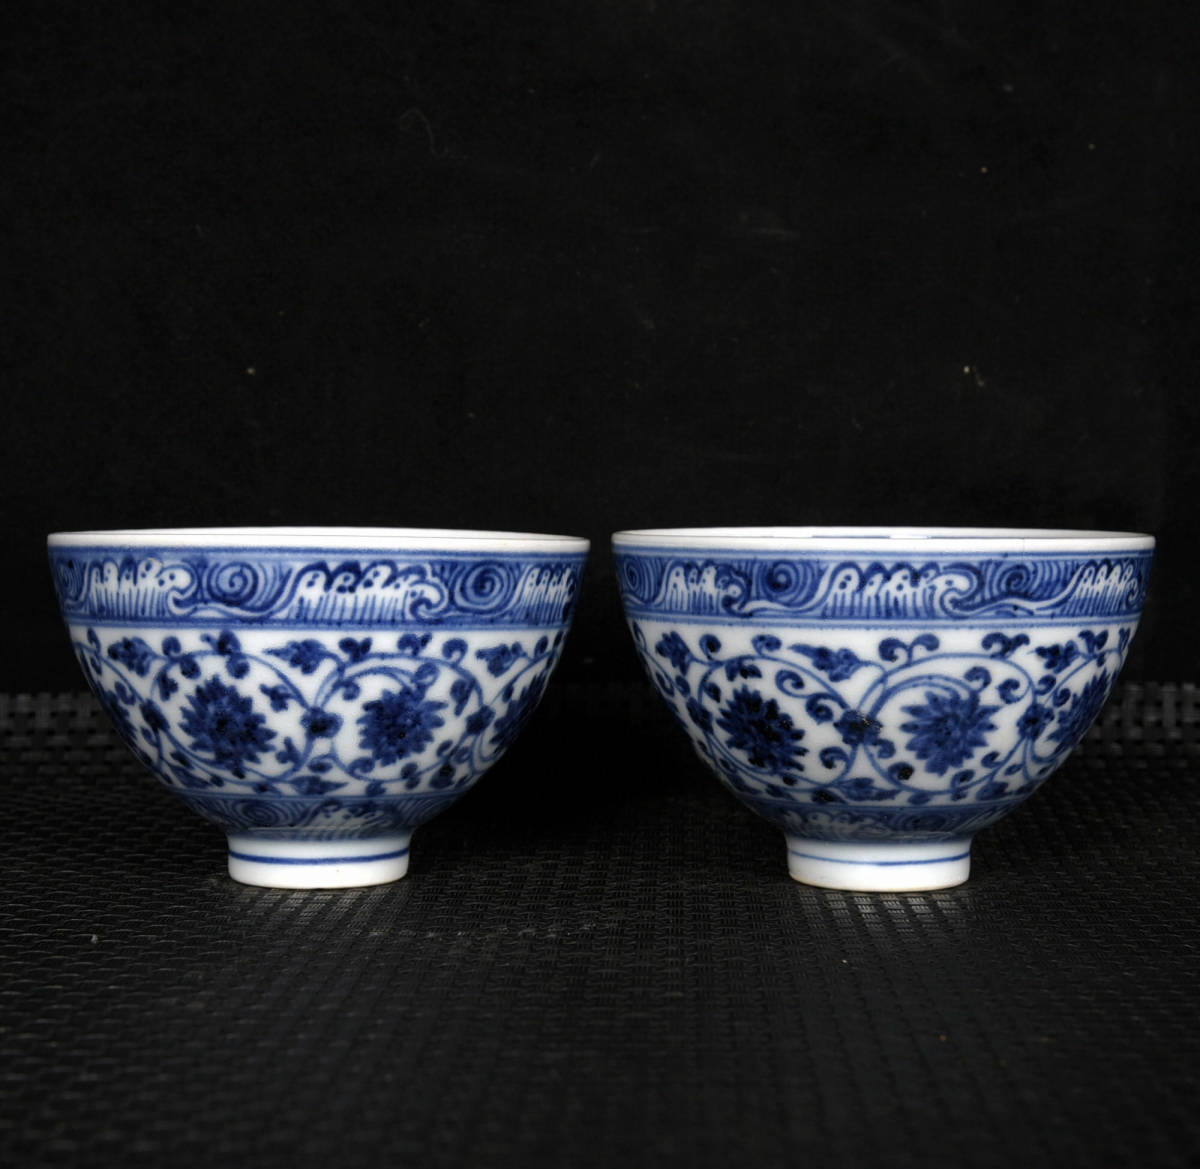 ▽鴻▽ 明 永樂年製款 古陶瓷品 青花 纏枝花紋 茶碗一對 置物 古賞物 中国古玩 中国古美術